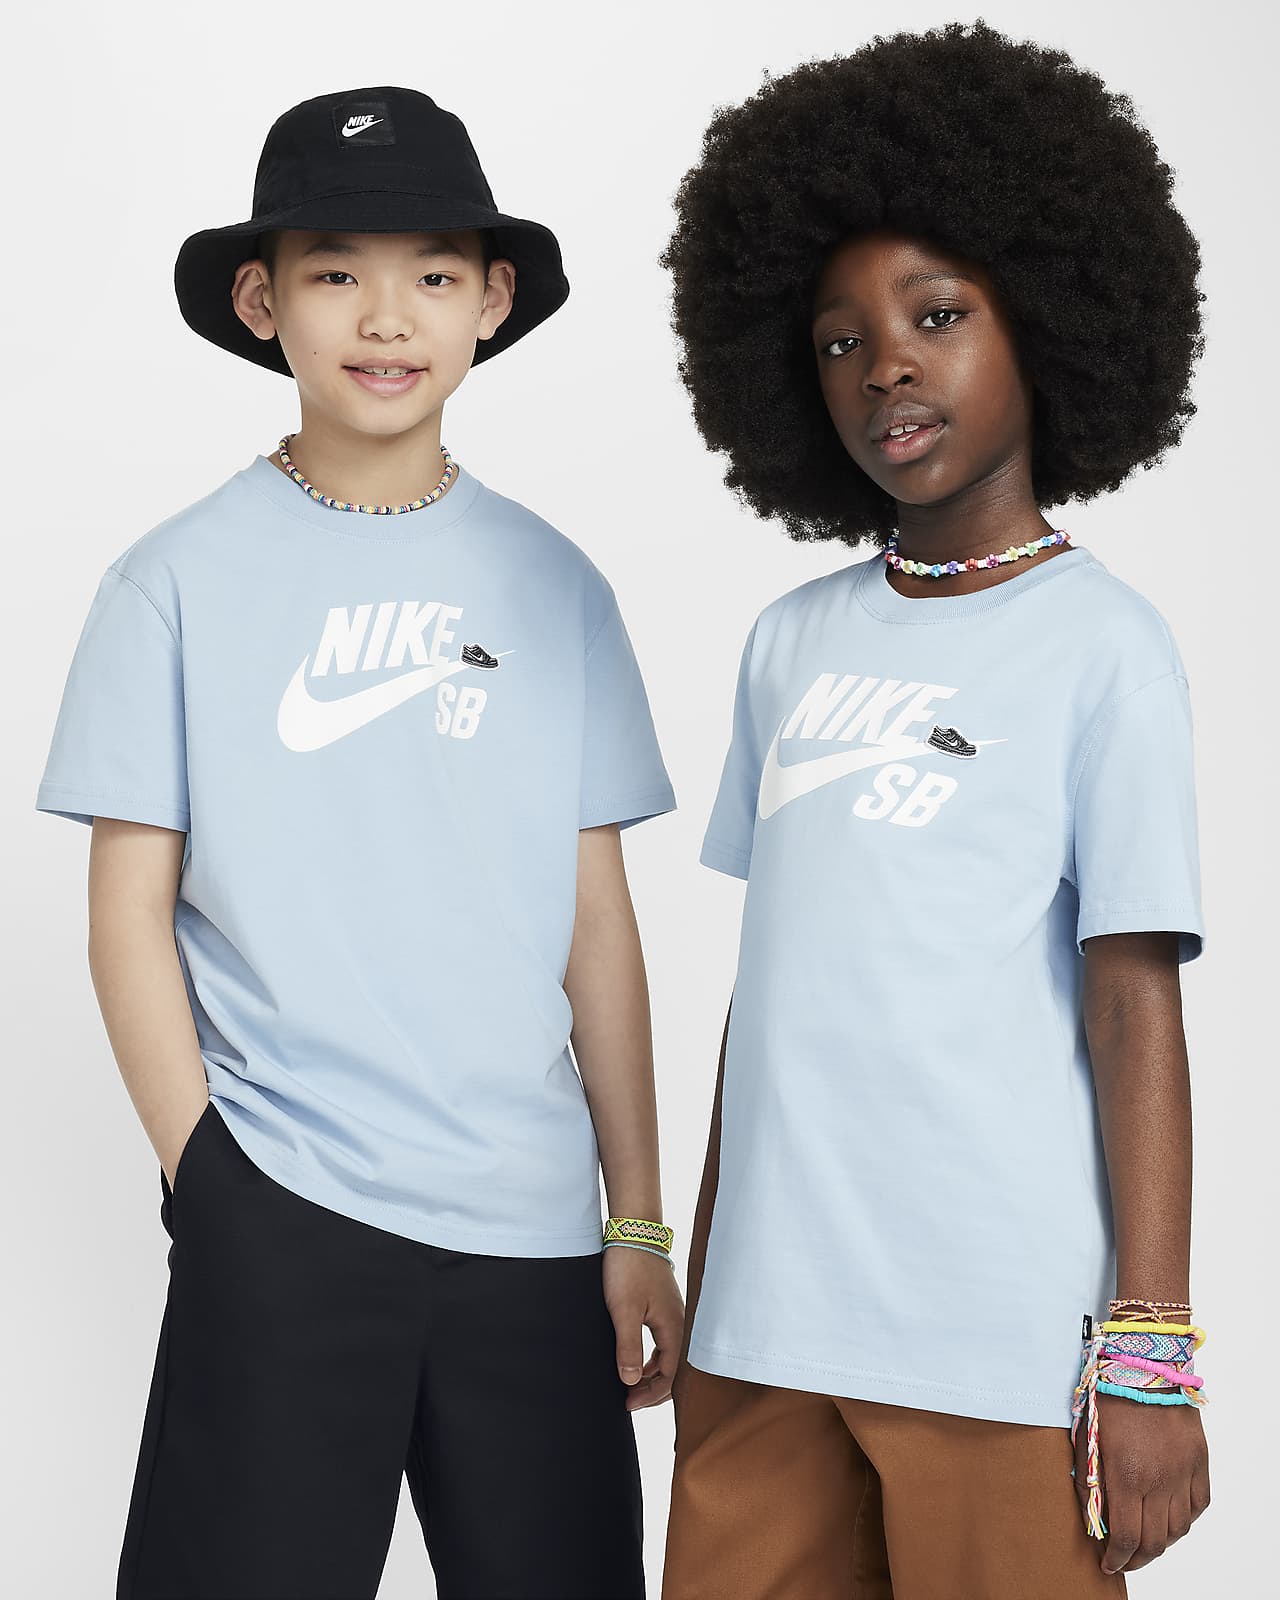 T-shirt Nike SB Júnior